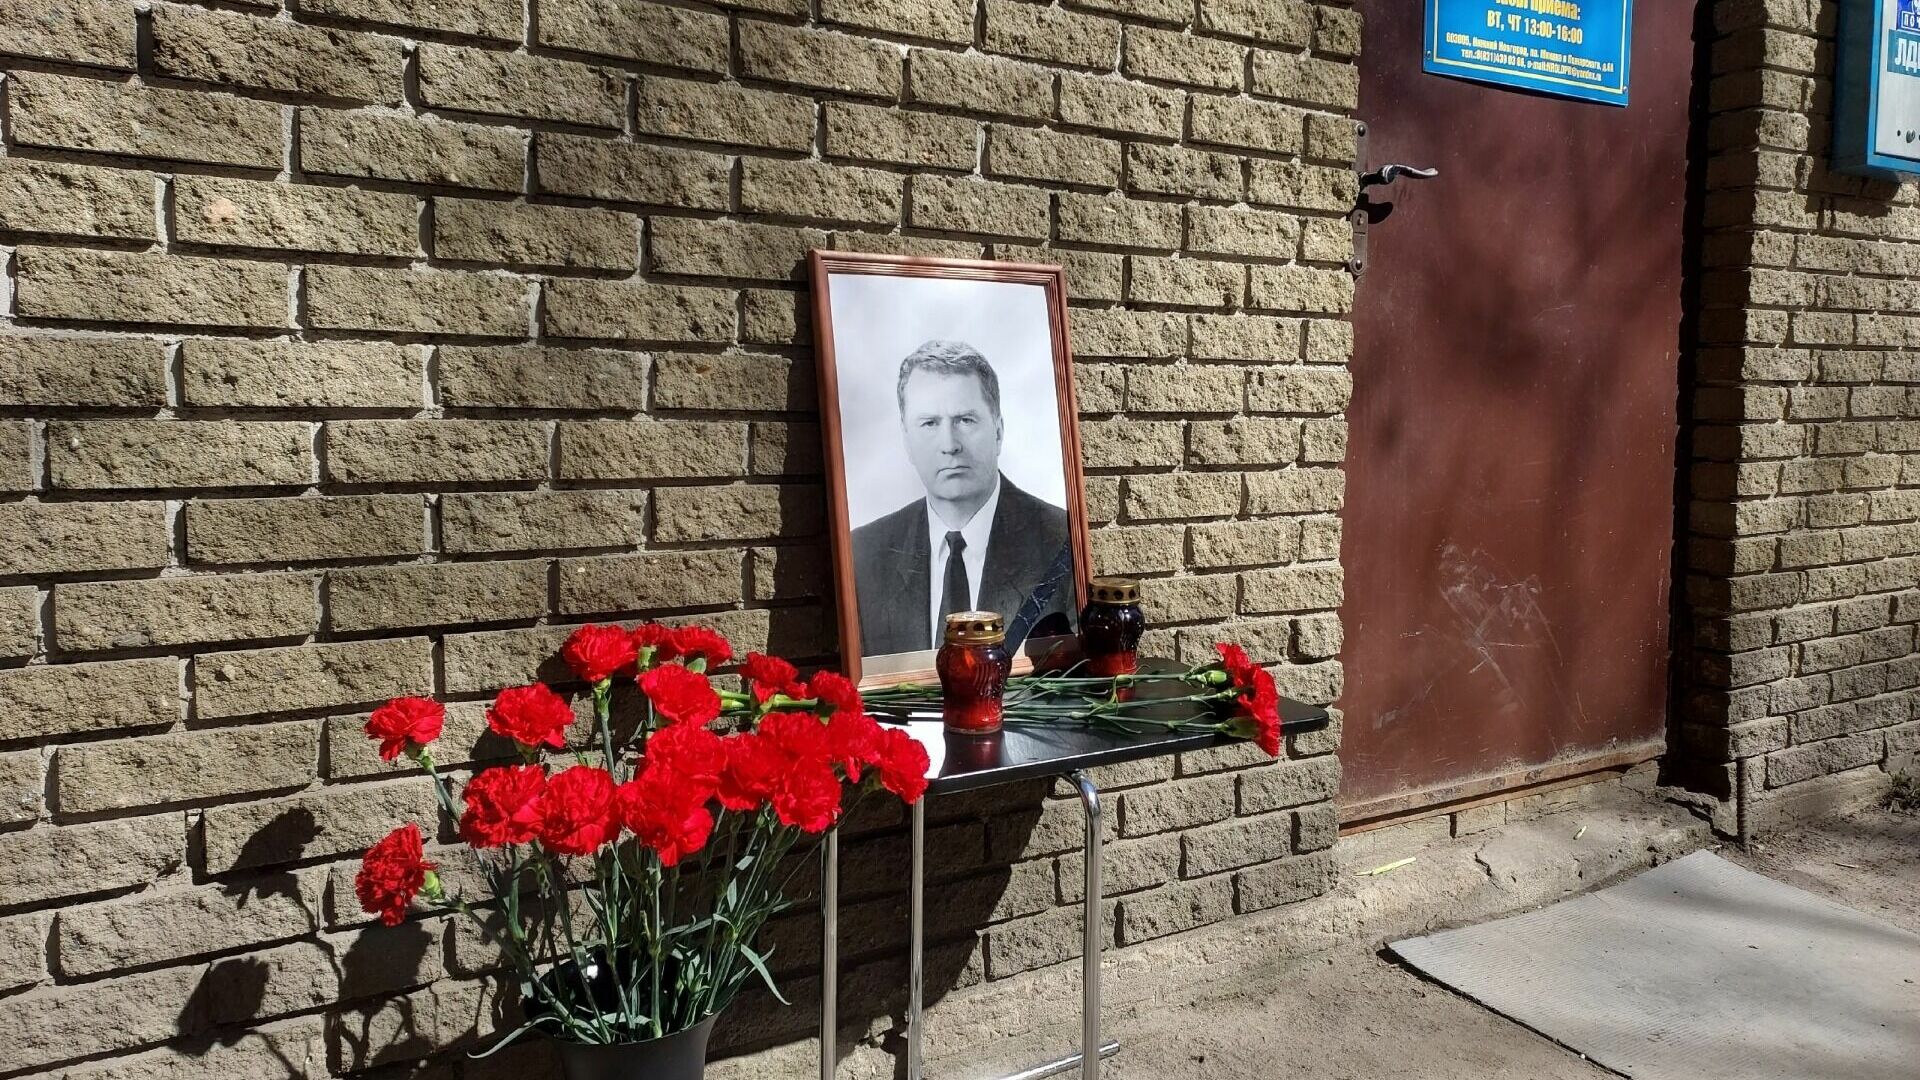 Мемориал Жириновскому появился в Нижнем Новгороде 6 апреля